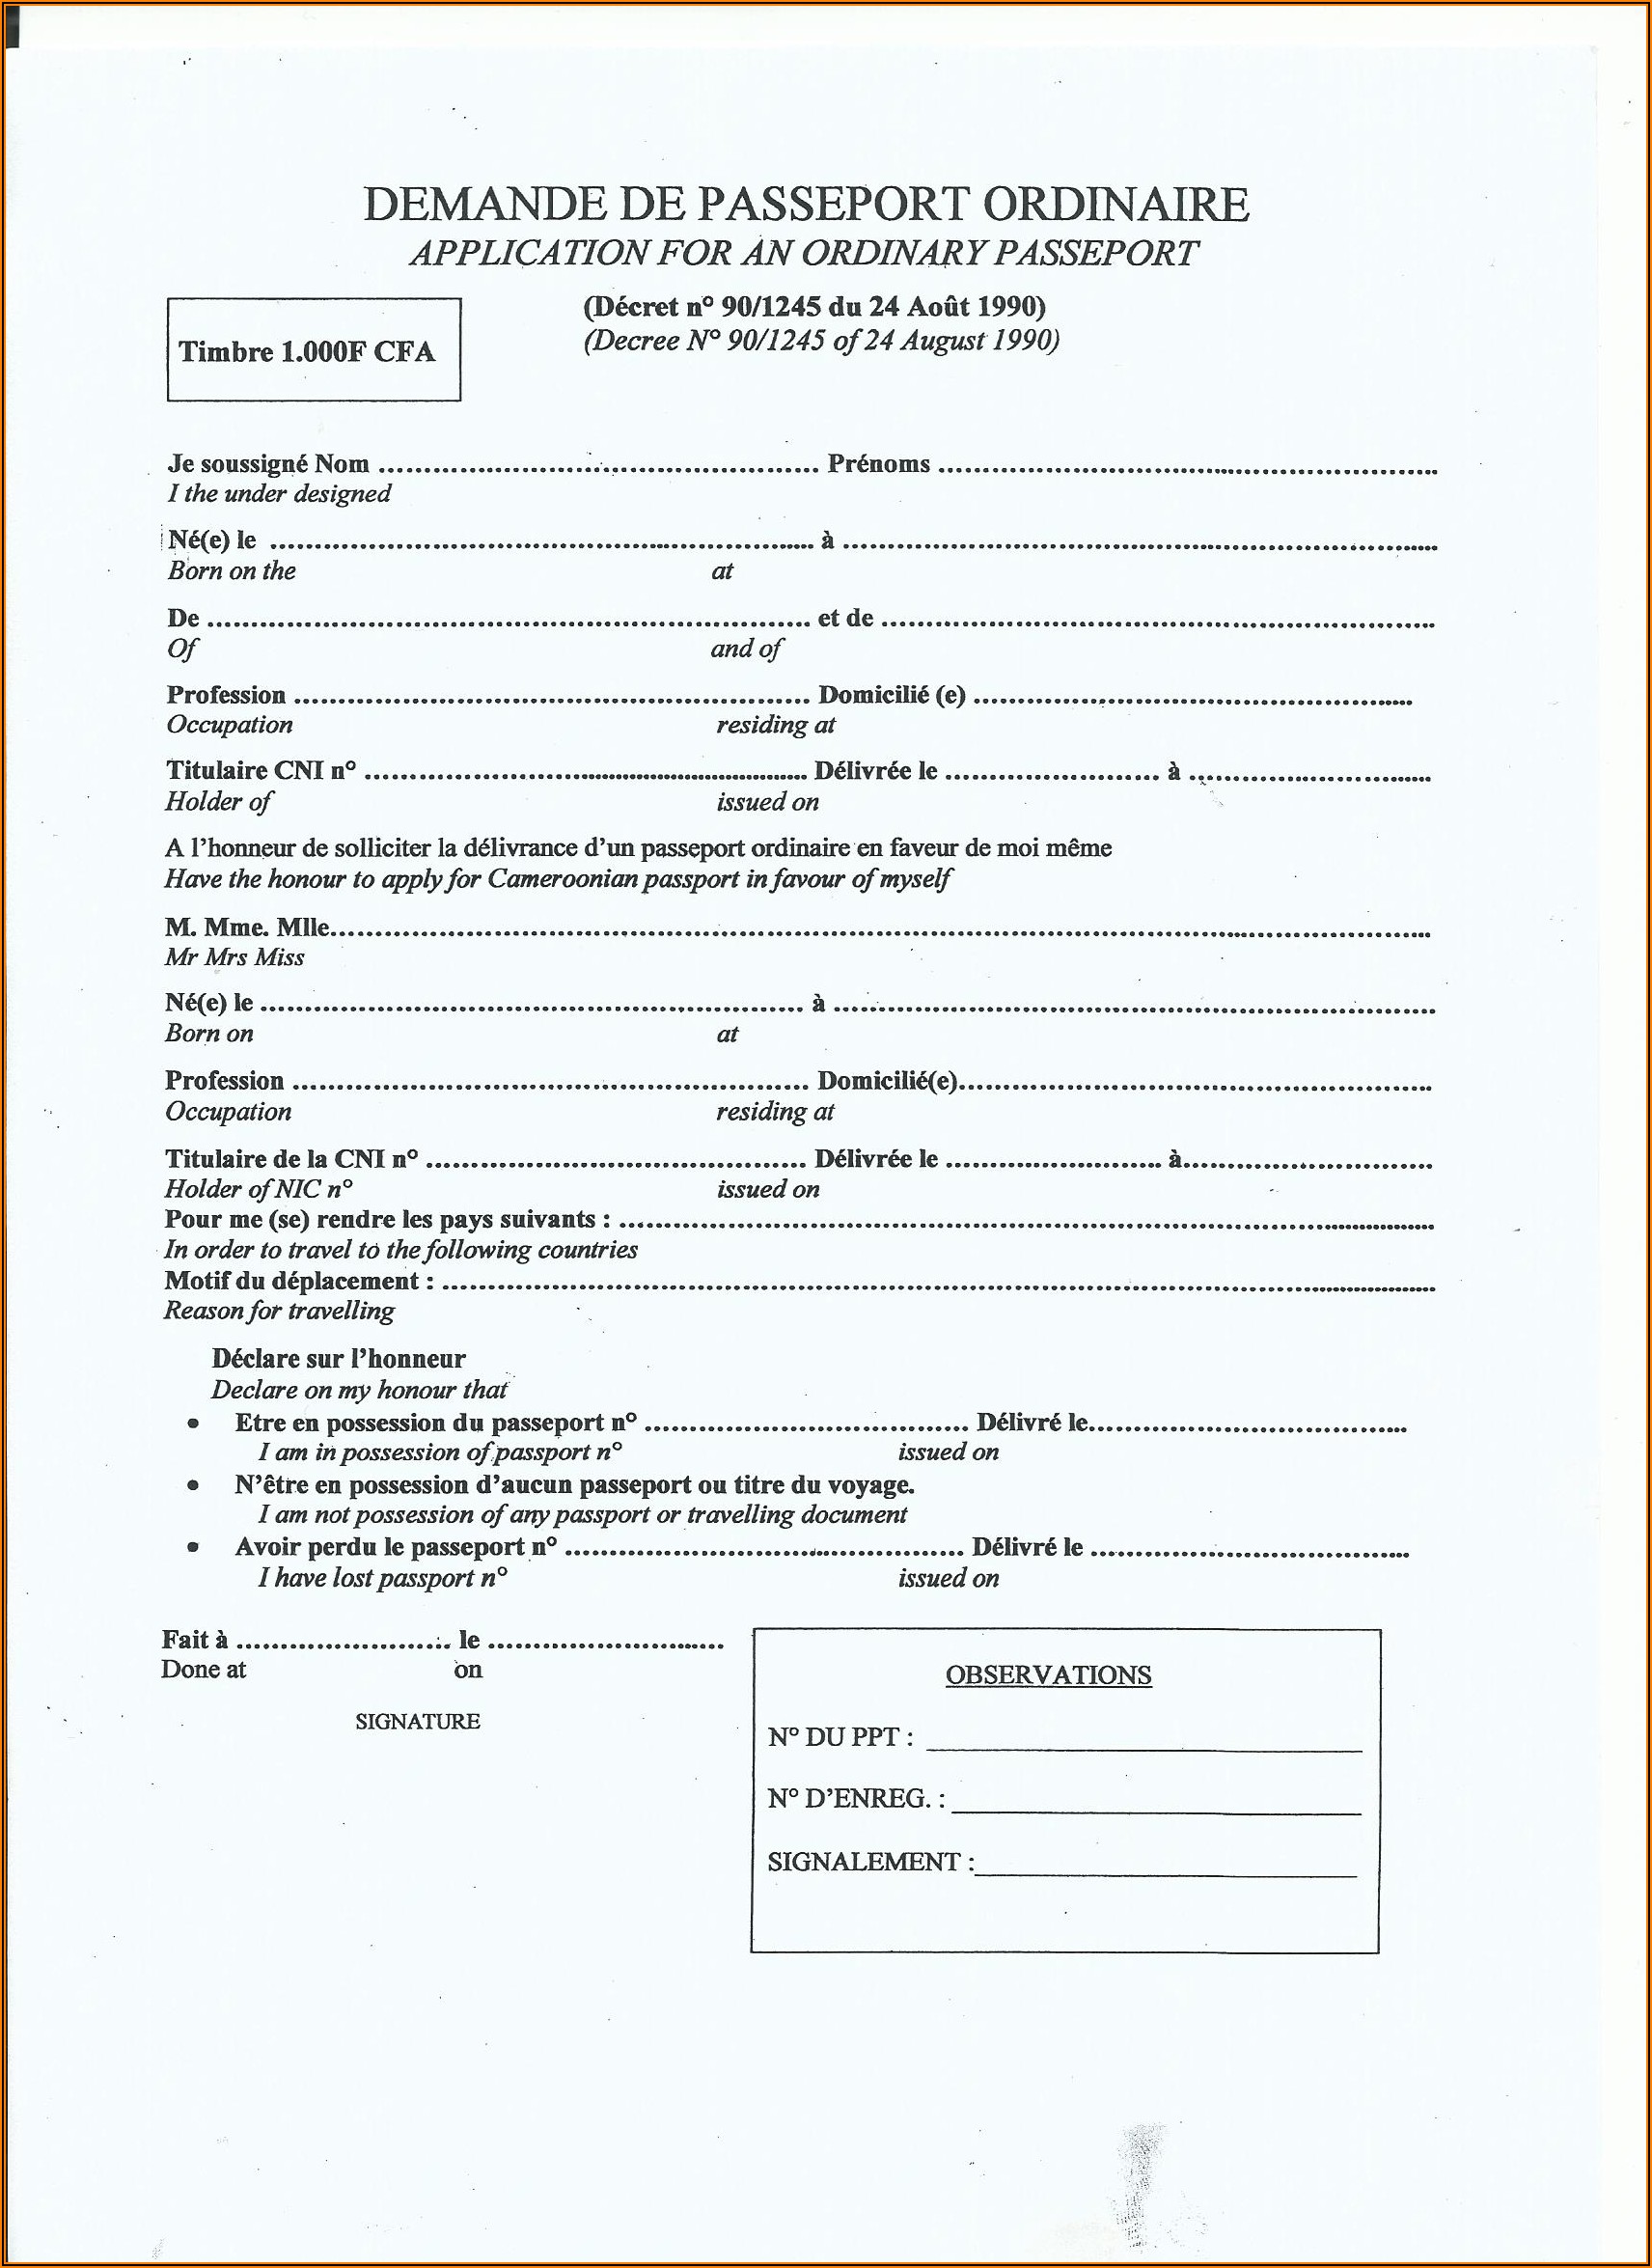 Application Form For Passport Renewal In Riyadh